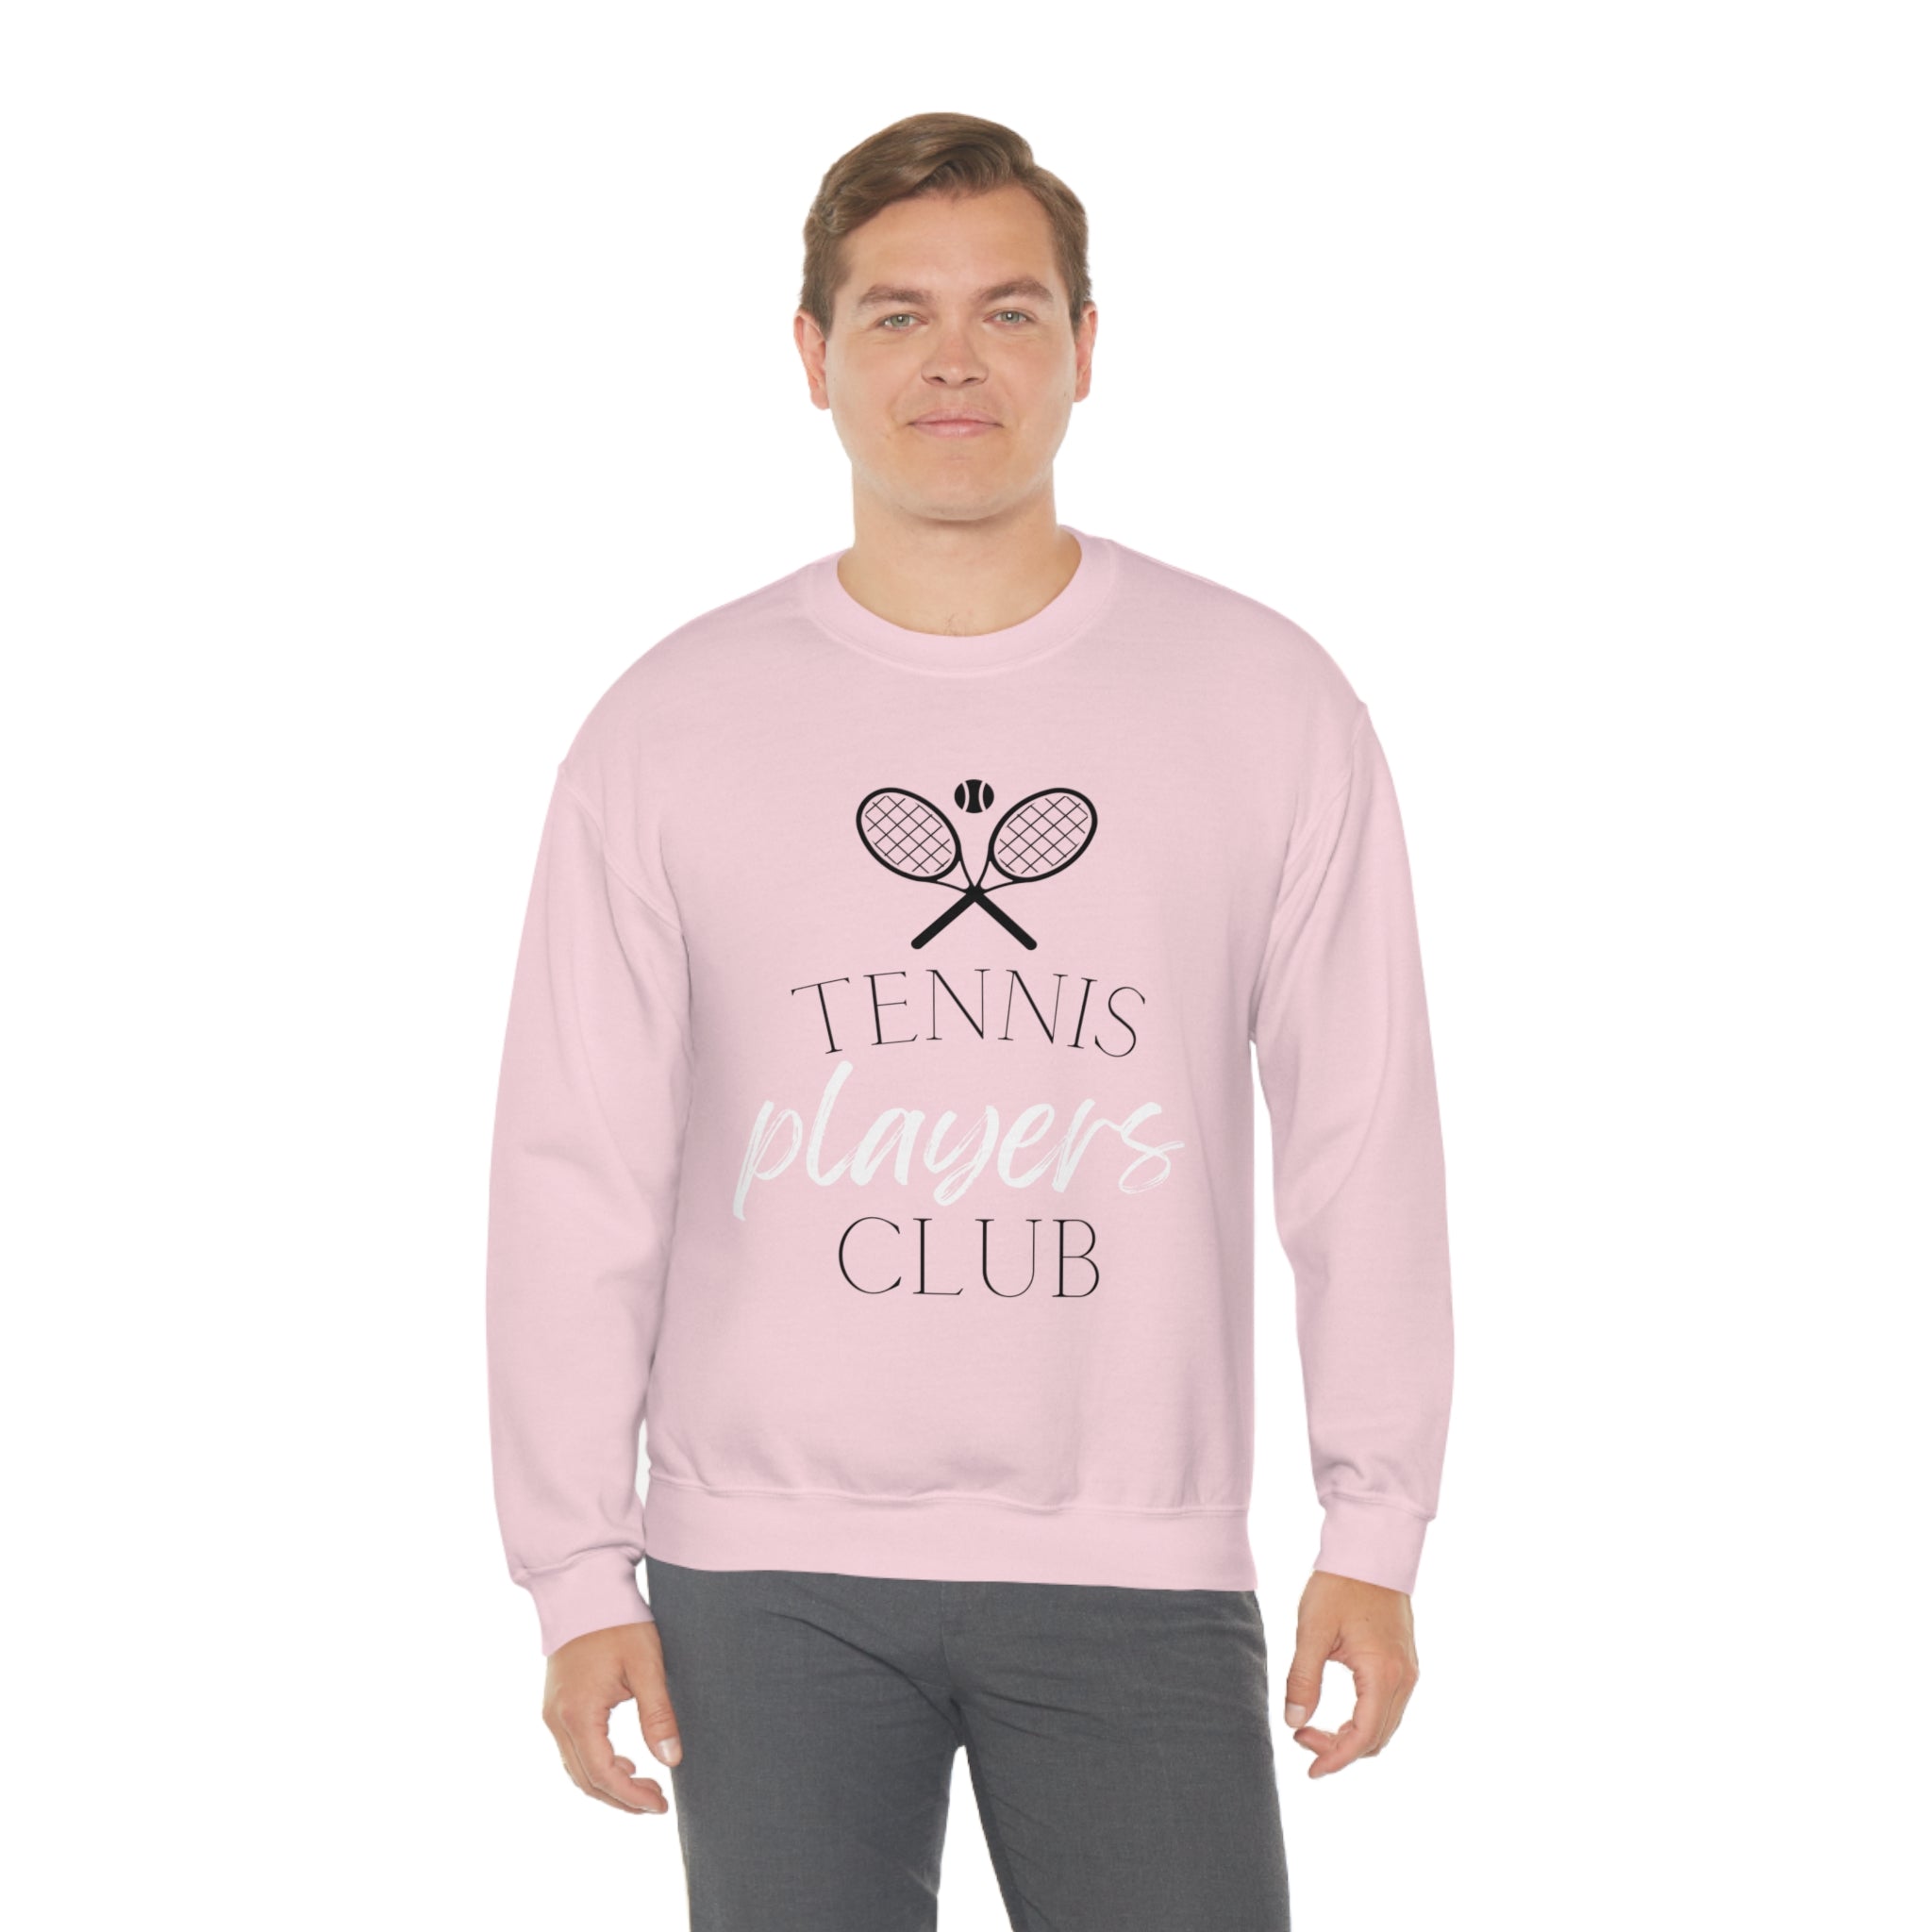 Tennis Players Club Sweatshirt